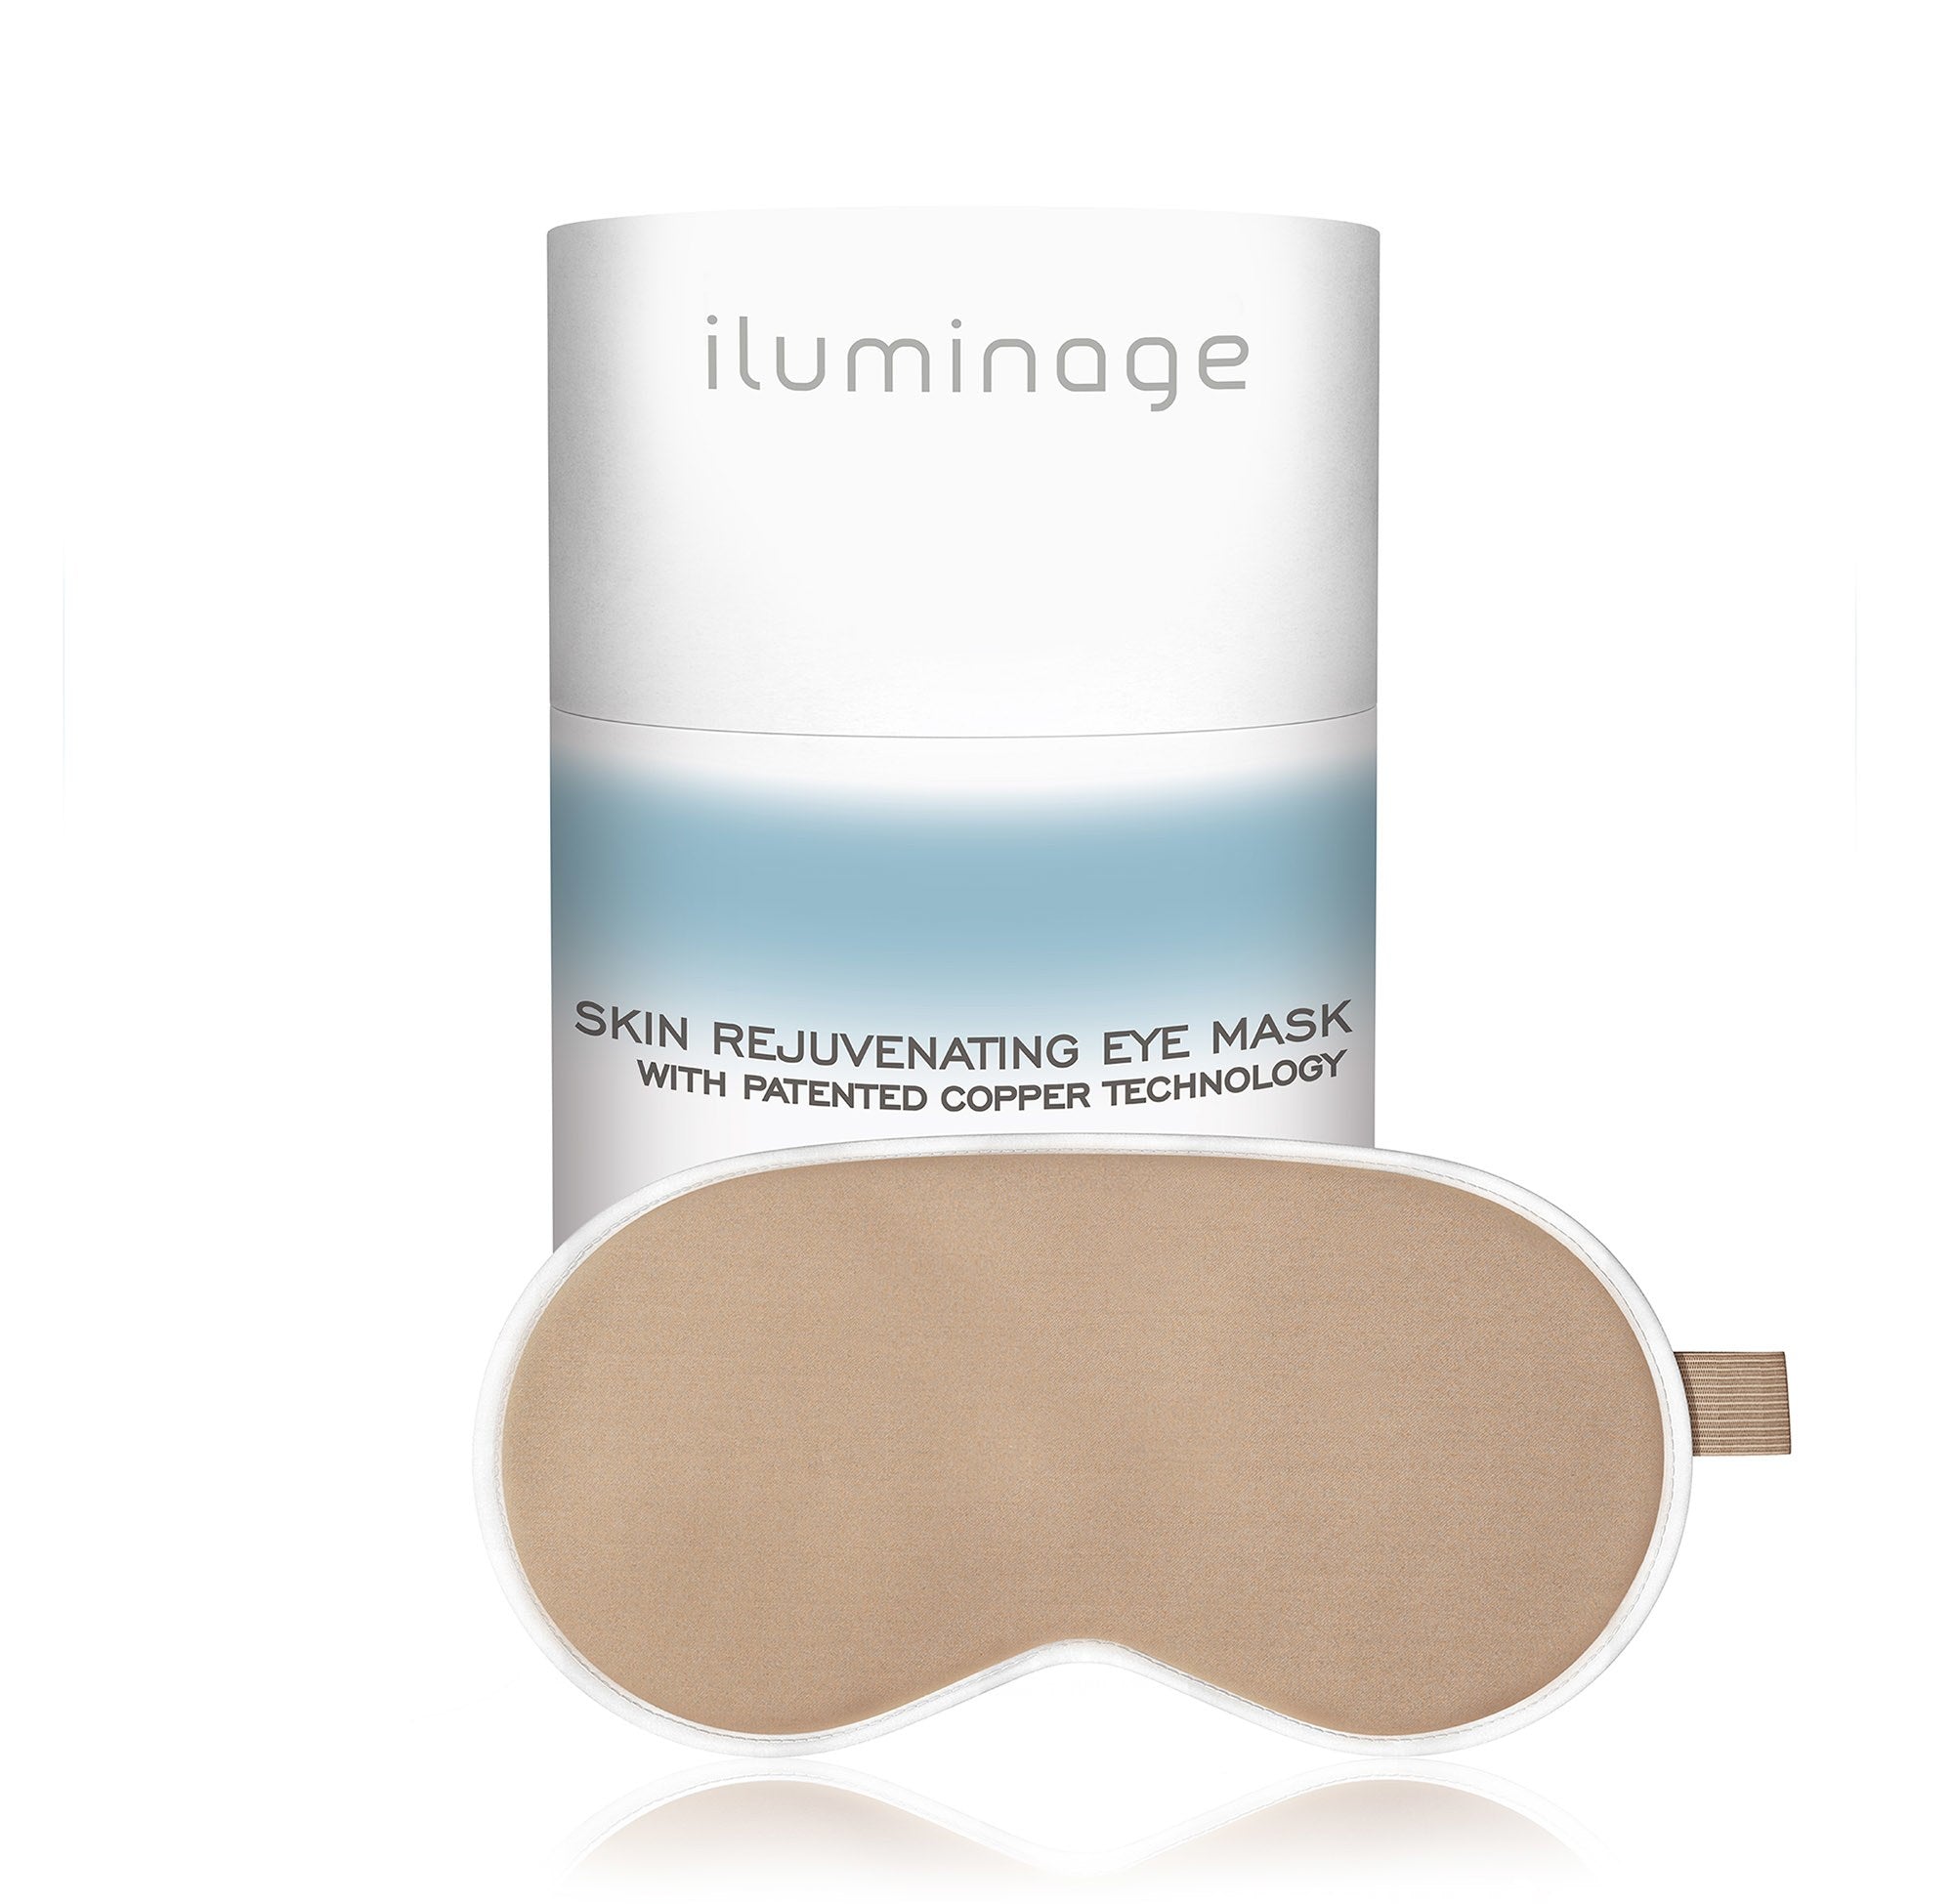 iluminage Skin Rejuvenating Eye Mask with Anti-Aging Copper Technology